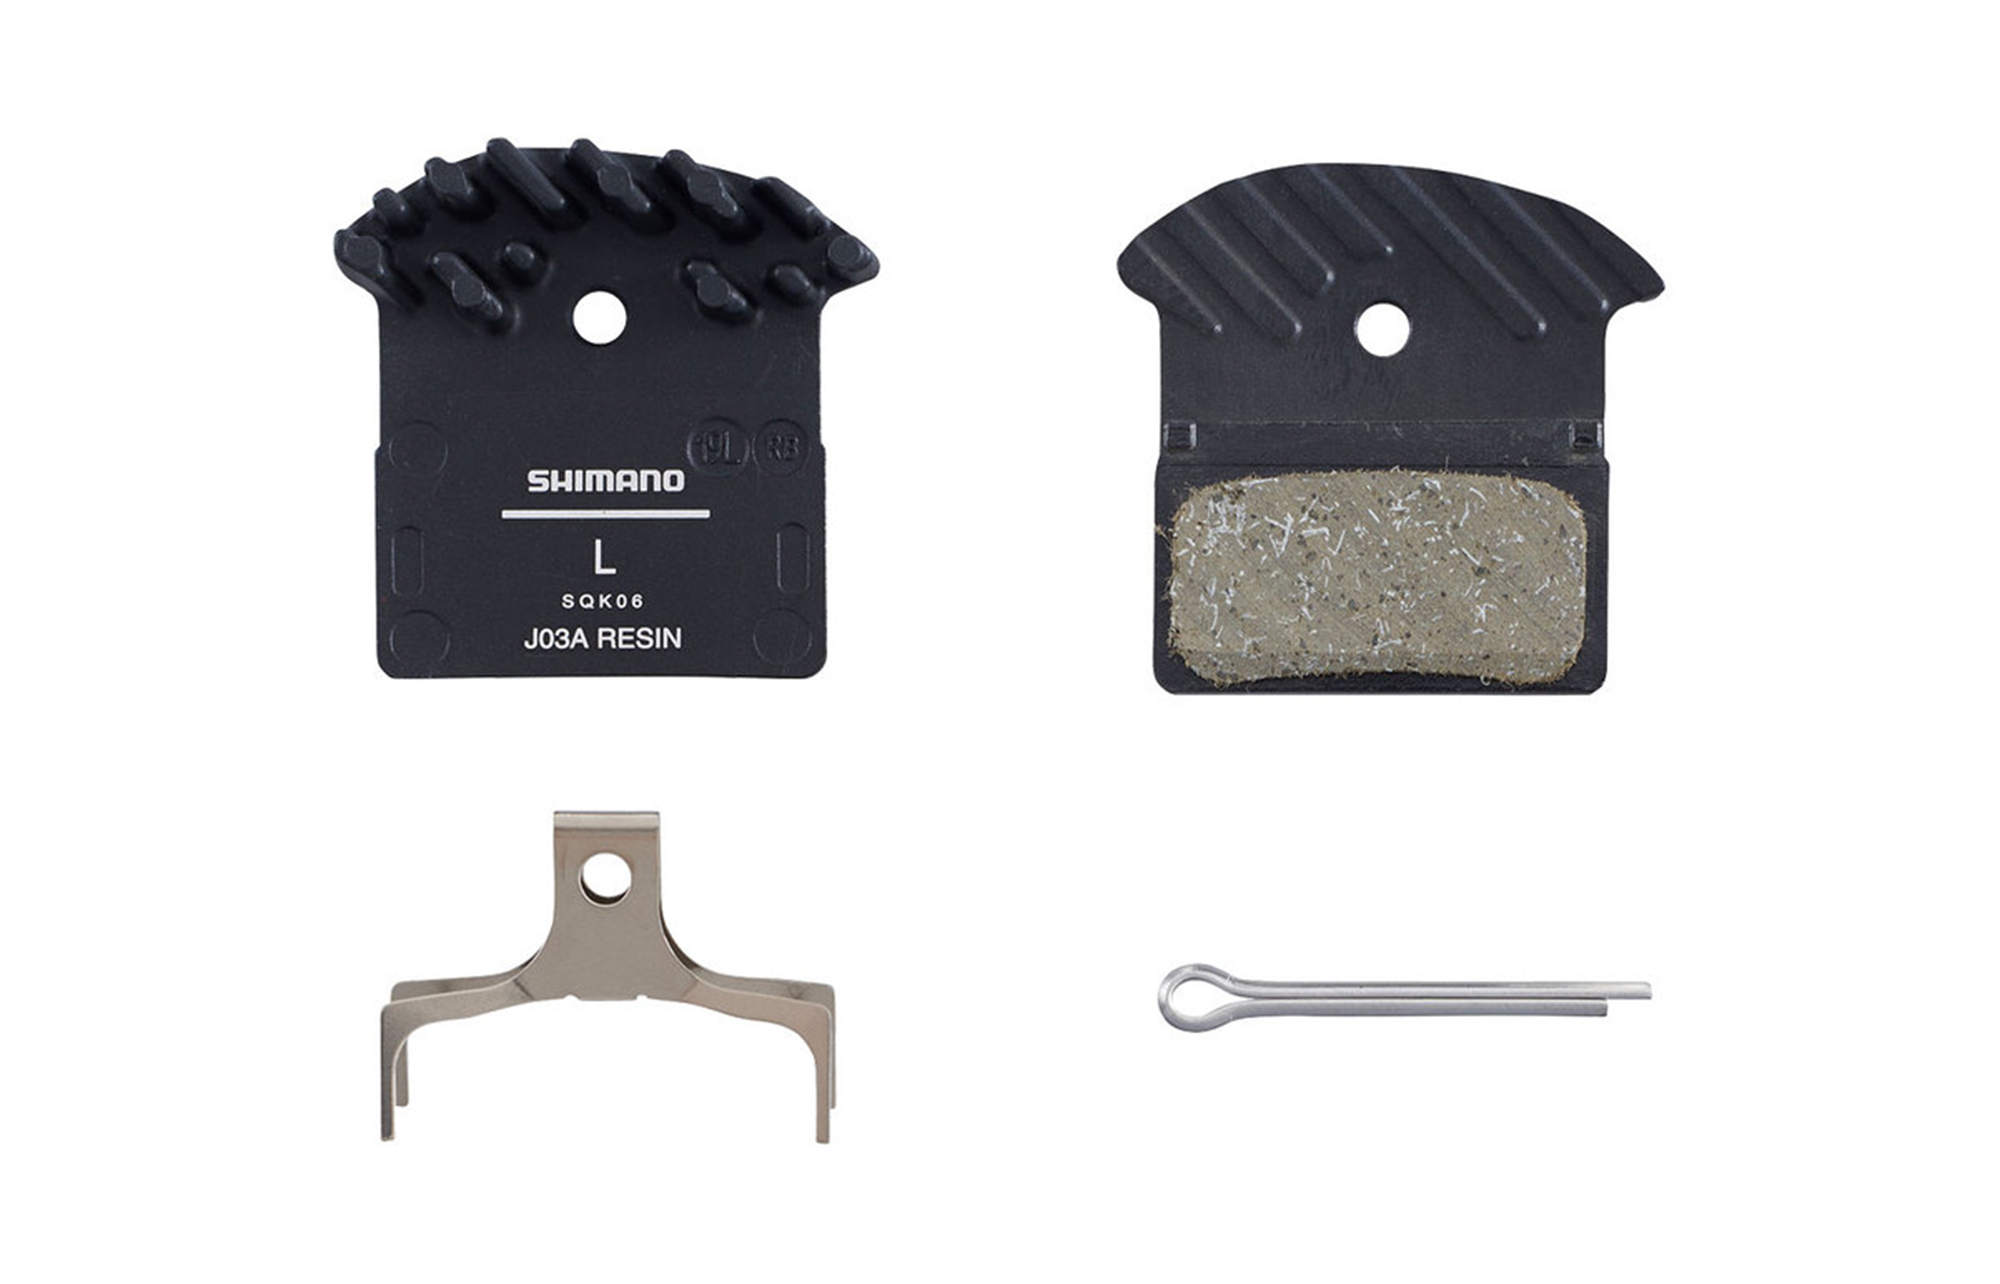 Details about   Shimano XTR BR-M9000 Resin Pad J03A BR-M9000,M9020,M987,M985,M8000,M785,M7000 